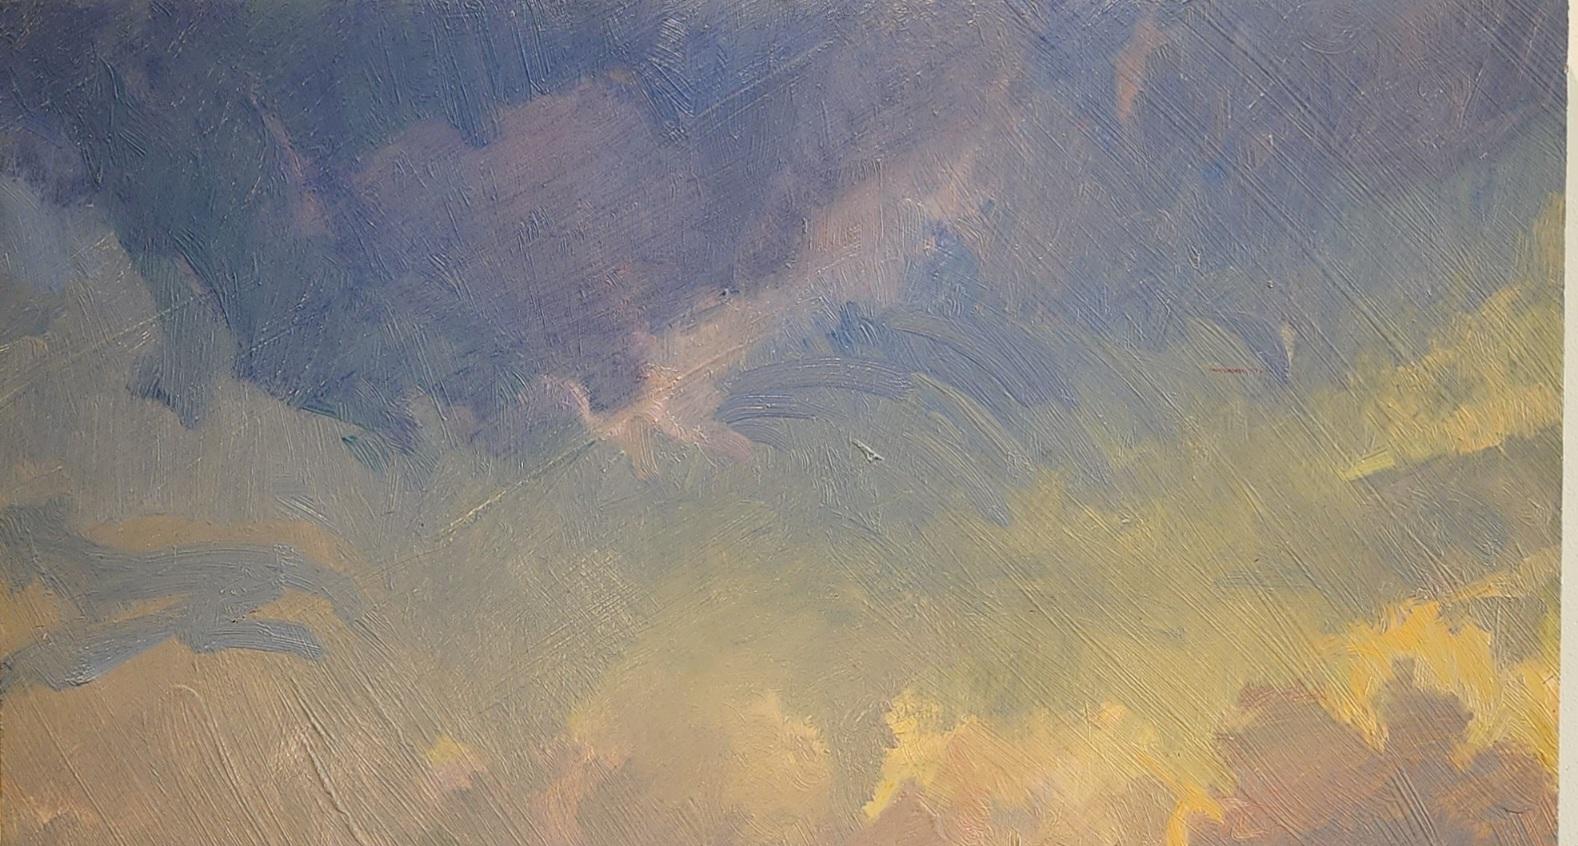  Vor Harvey (Hurrikan 2017)  Impressionismus Rockport Texas Golfküste (Amerikanischer Impressionismus), Painting, von Virginia Vaughan 